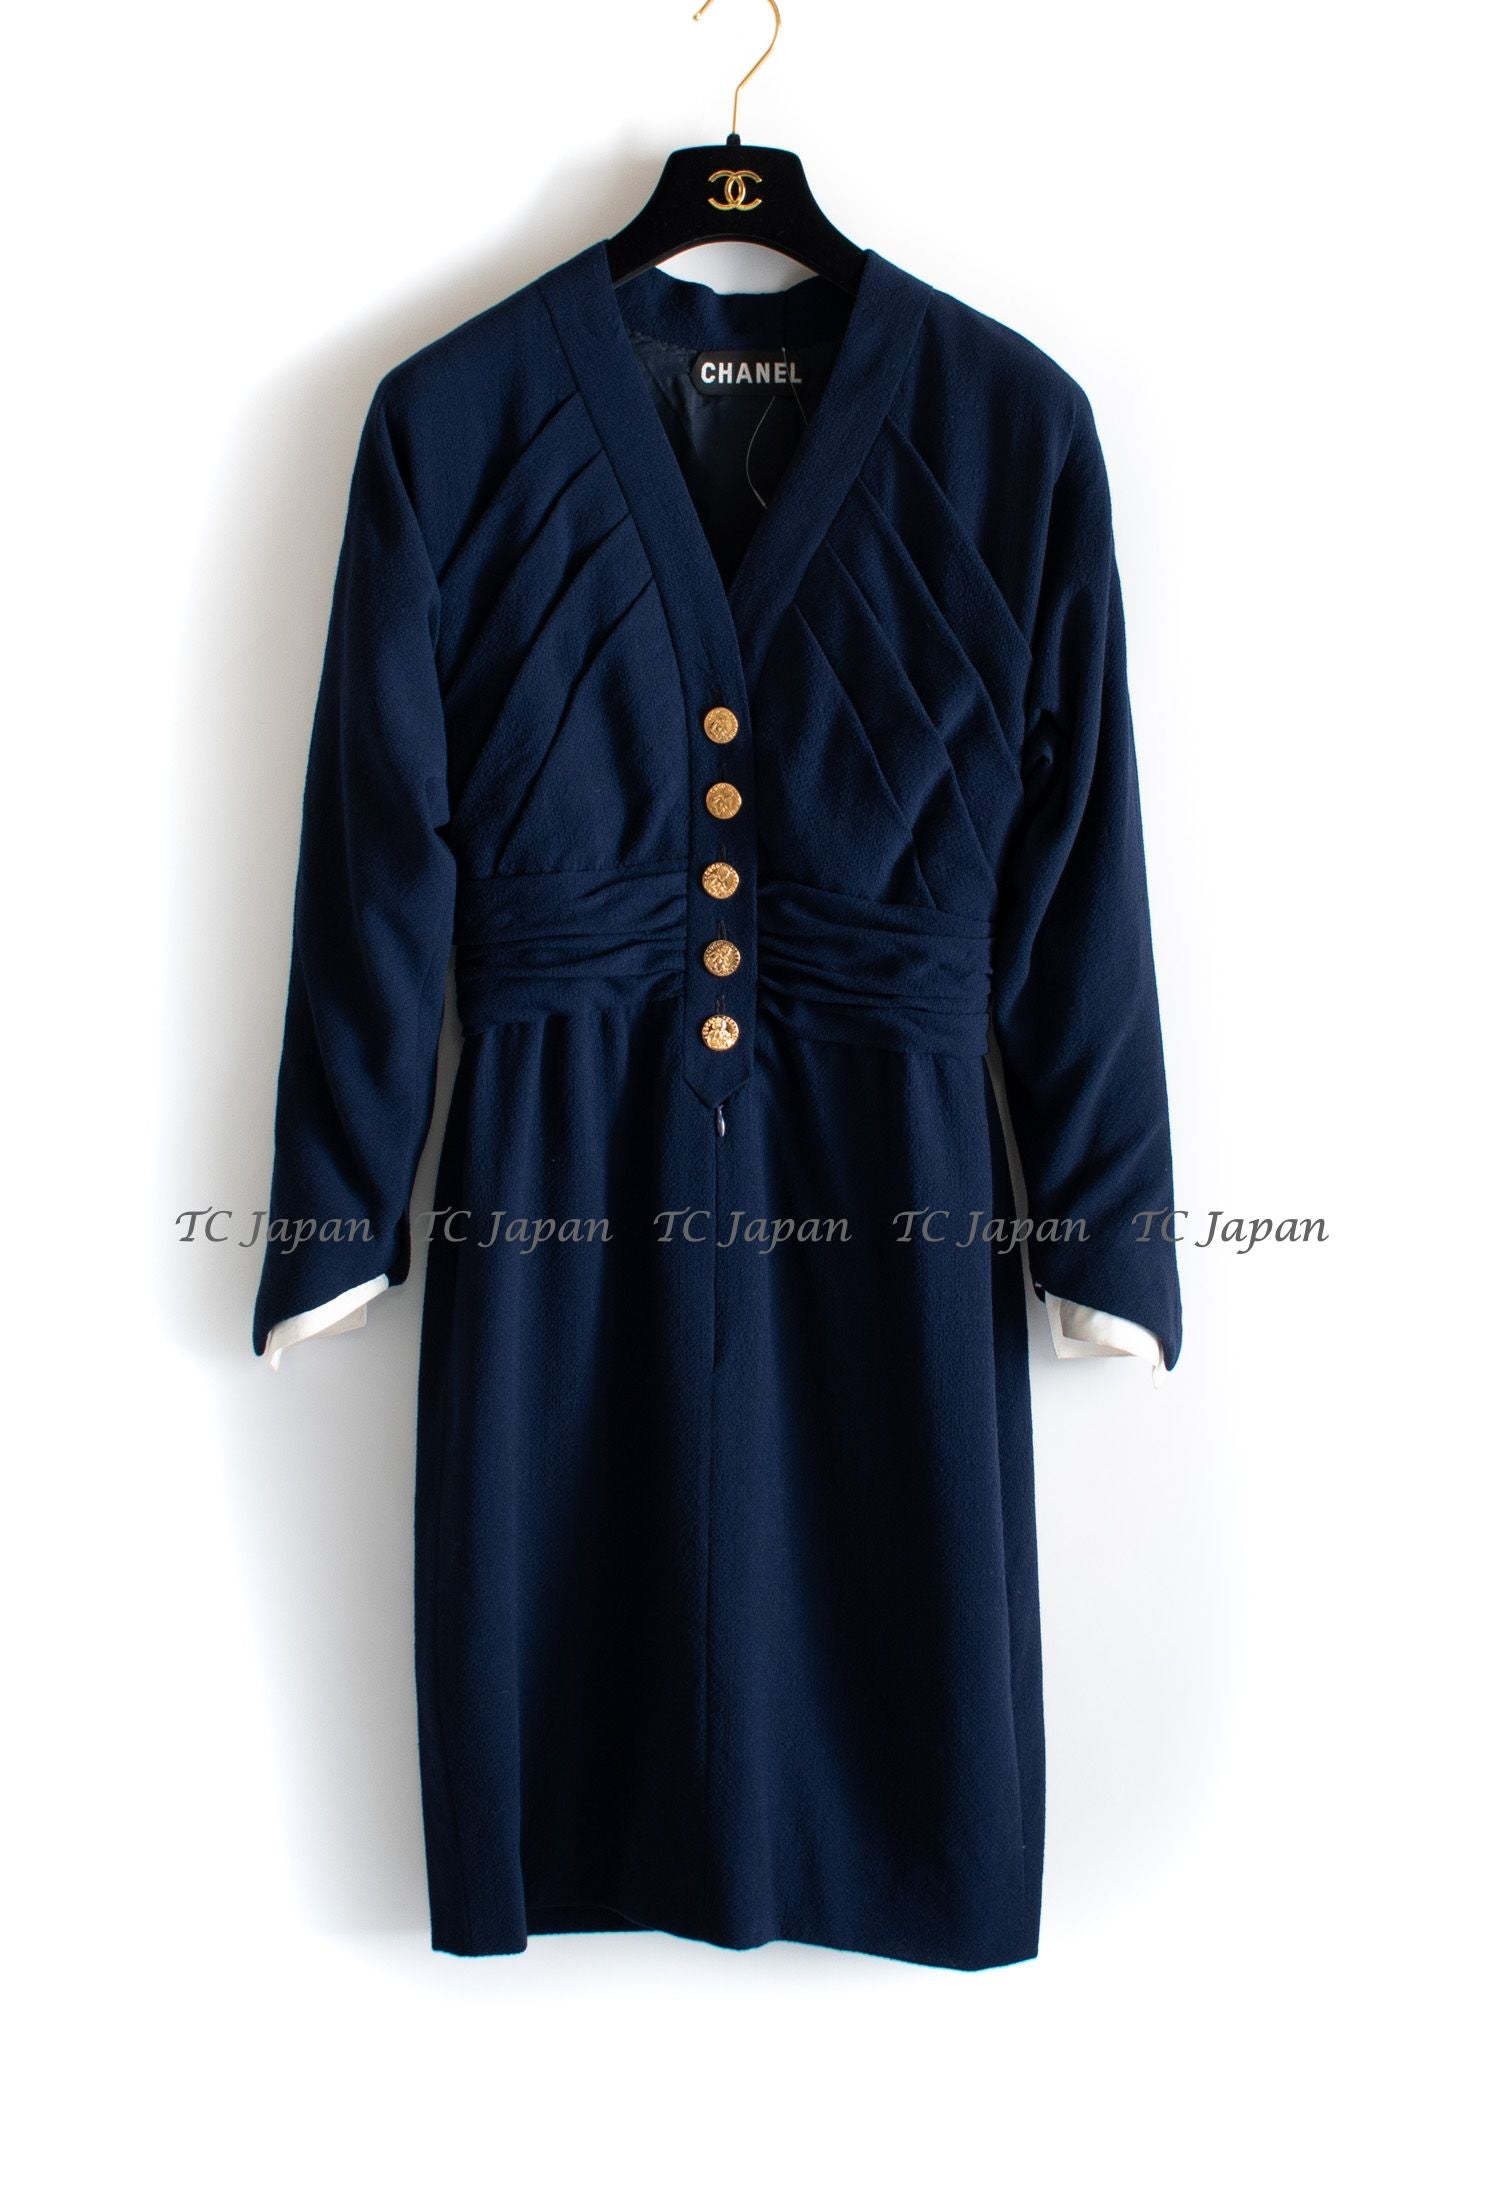 シャネル オートクチュール・ネイビー・ワンピース CHANEL Haute Couture Navy Dress – CHANEL TC JAPAN